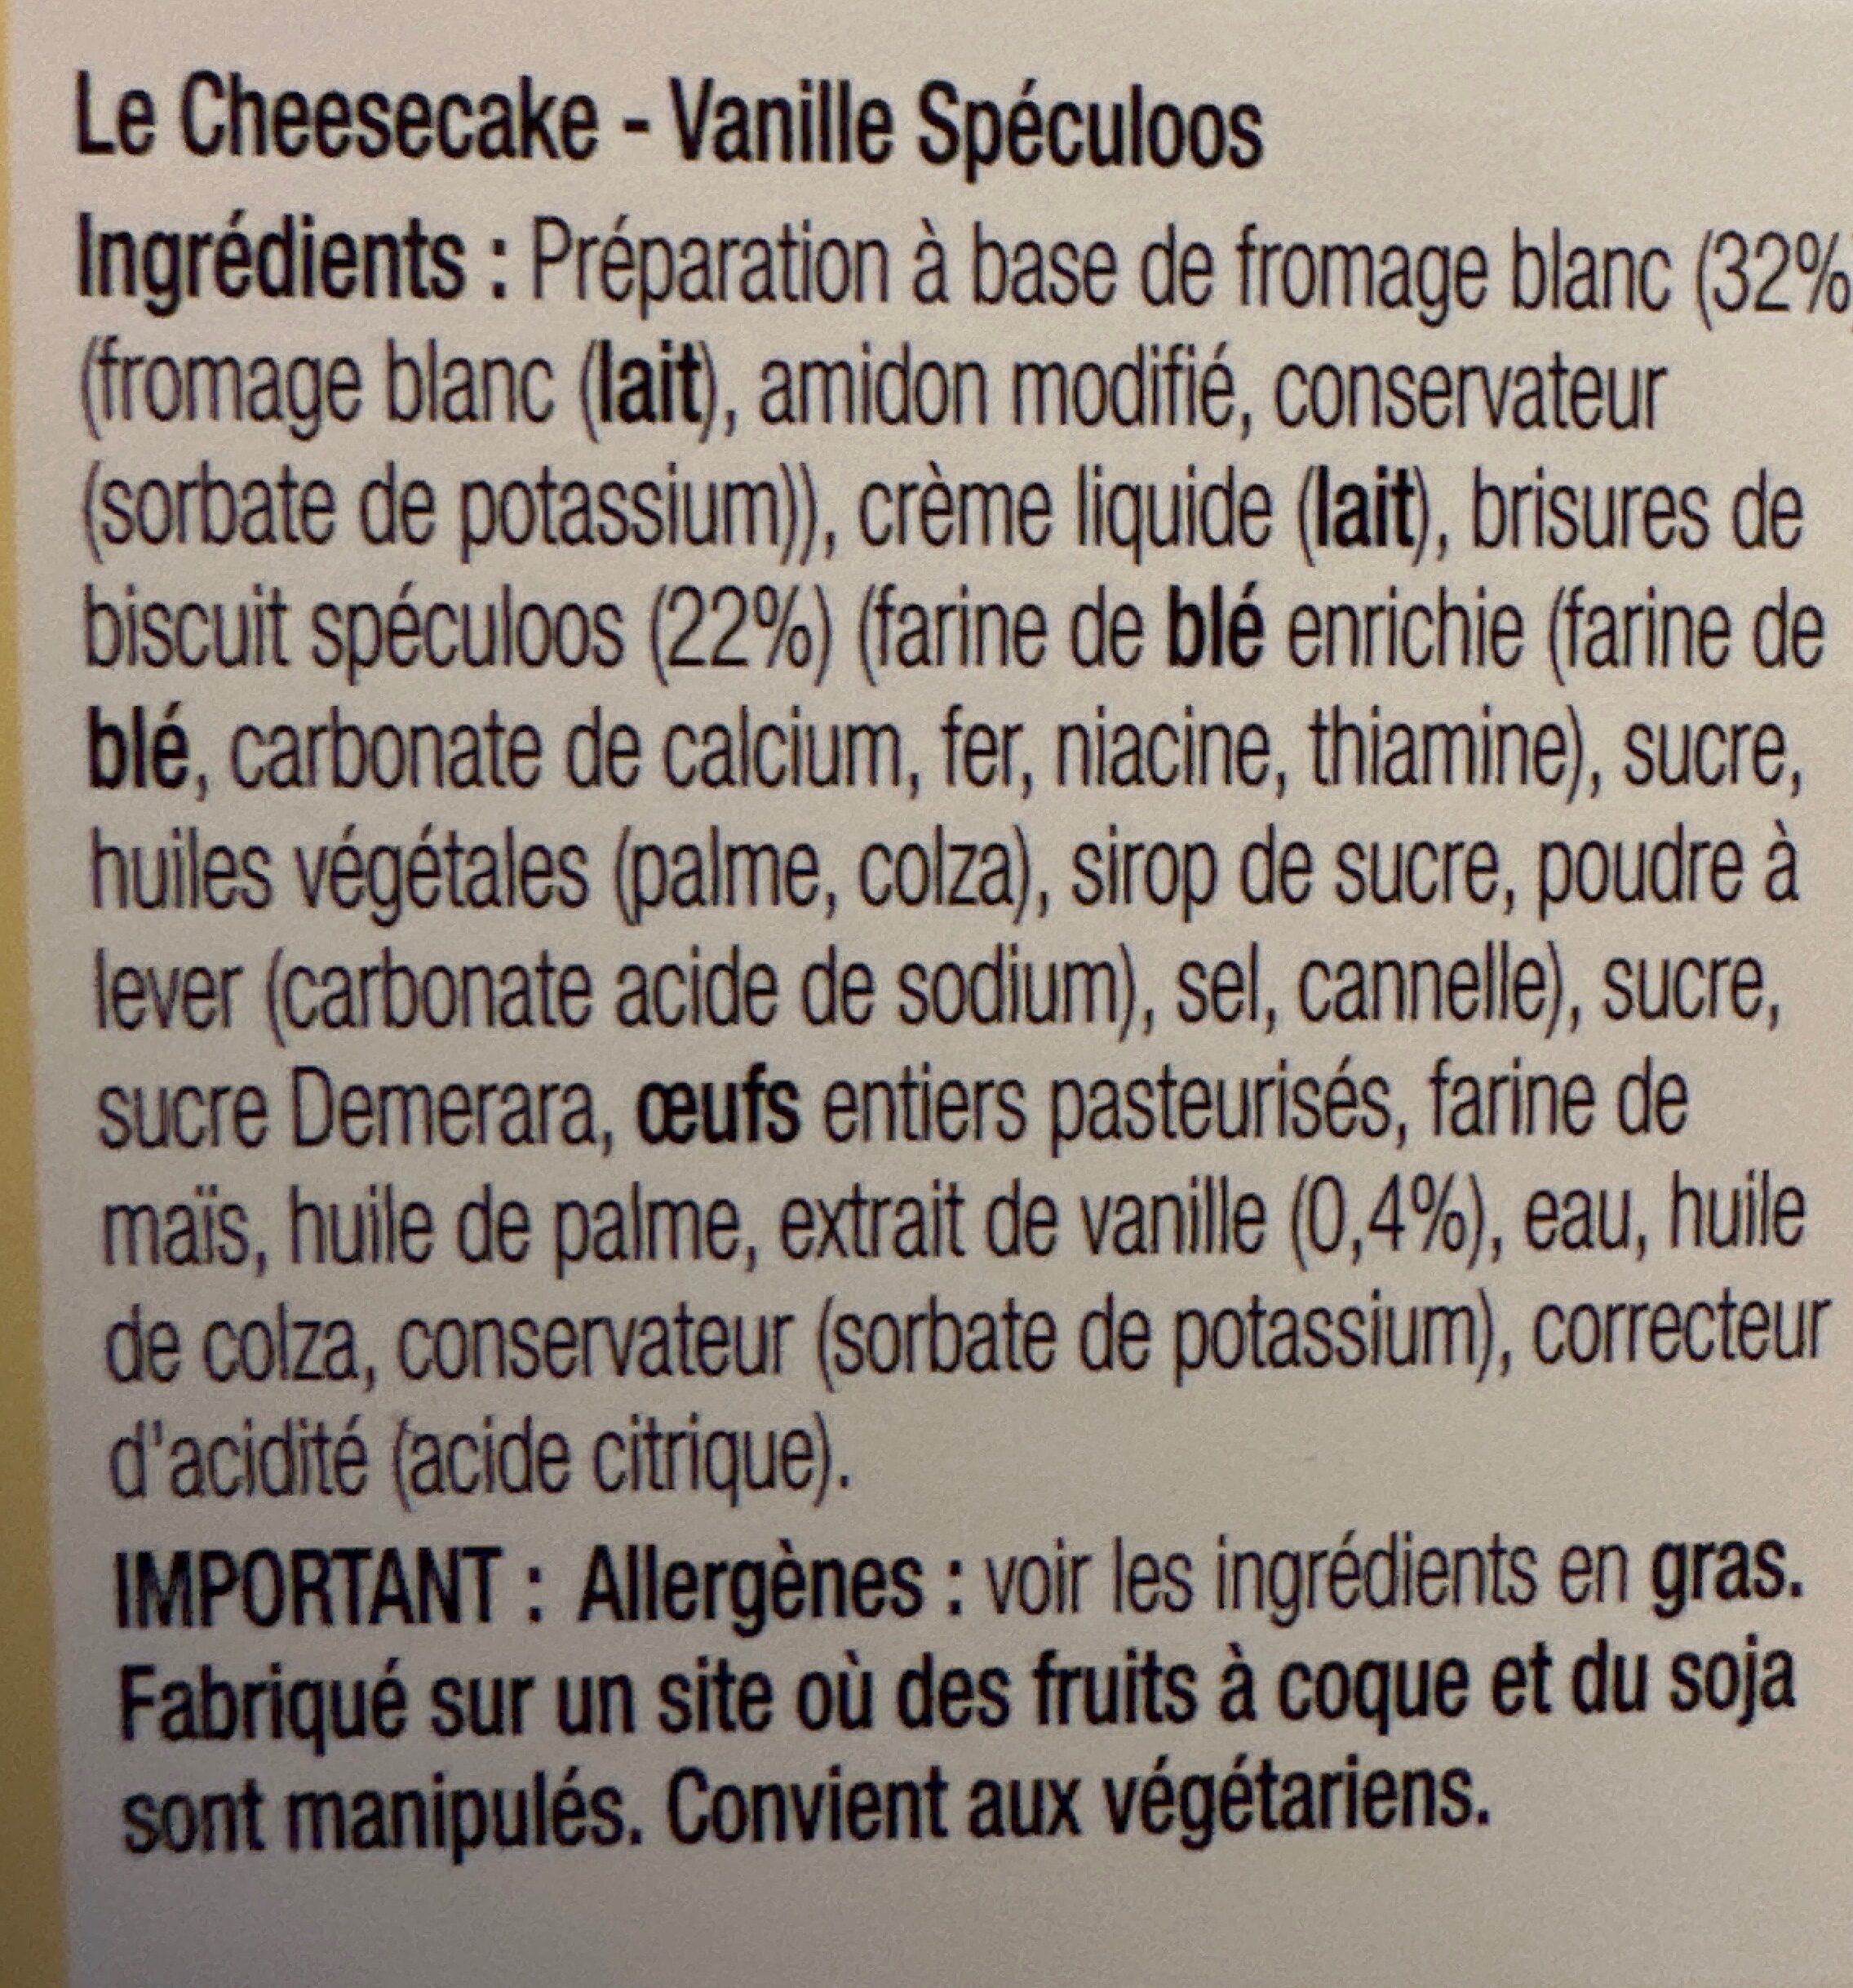 Cheesecake - Vanille speculoos - Ingredients - fr